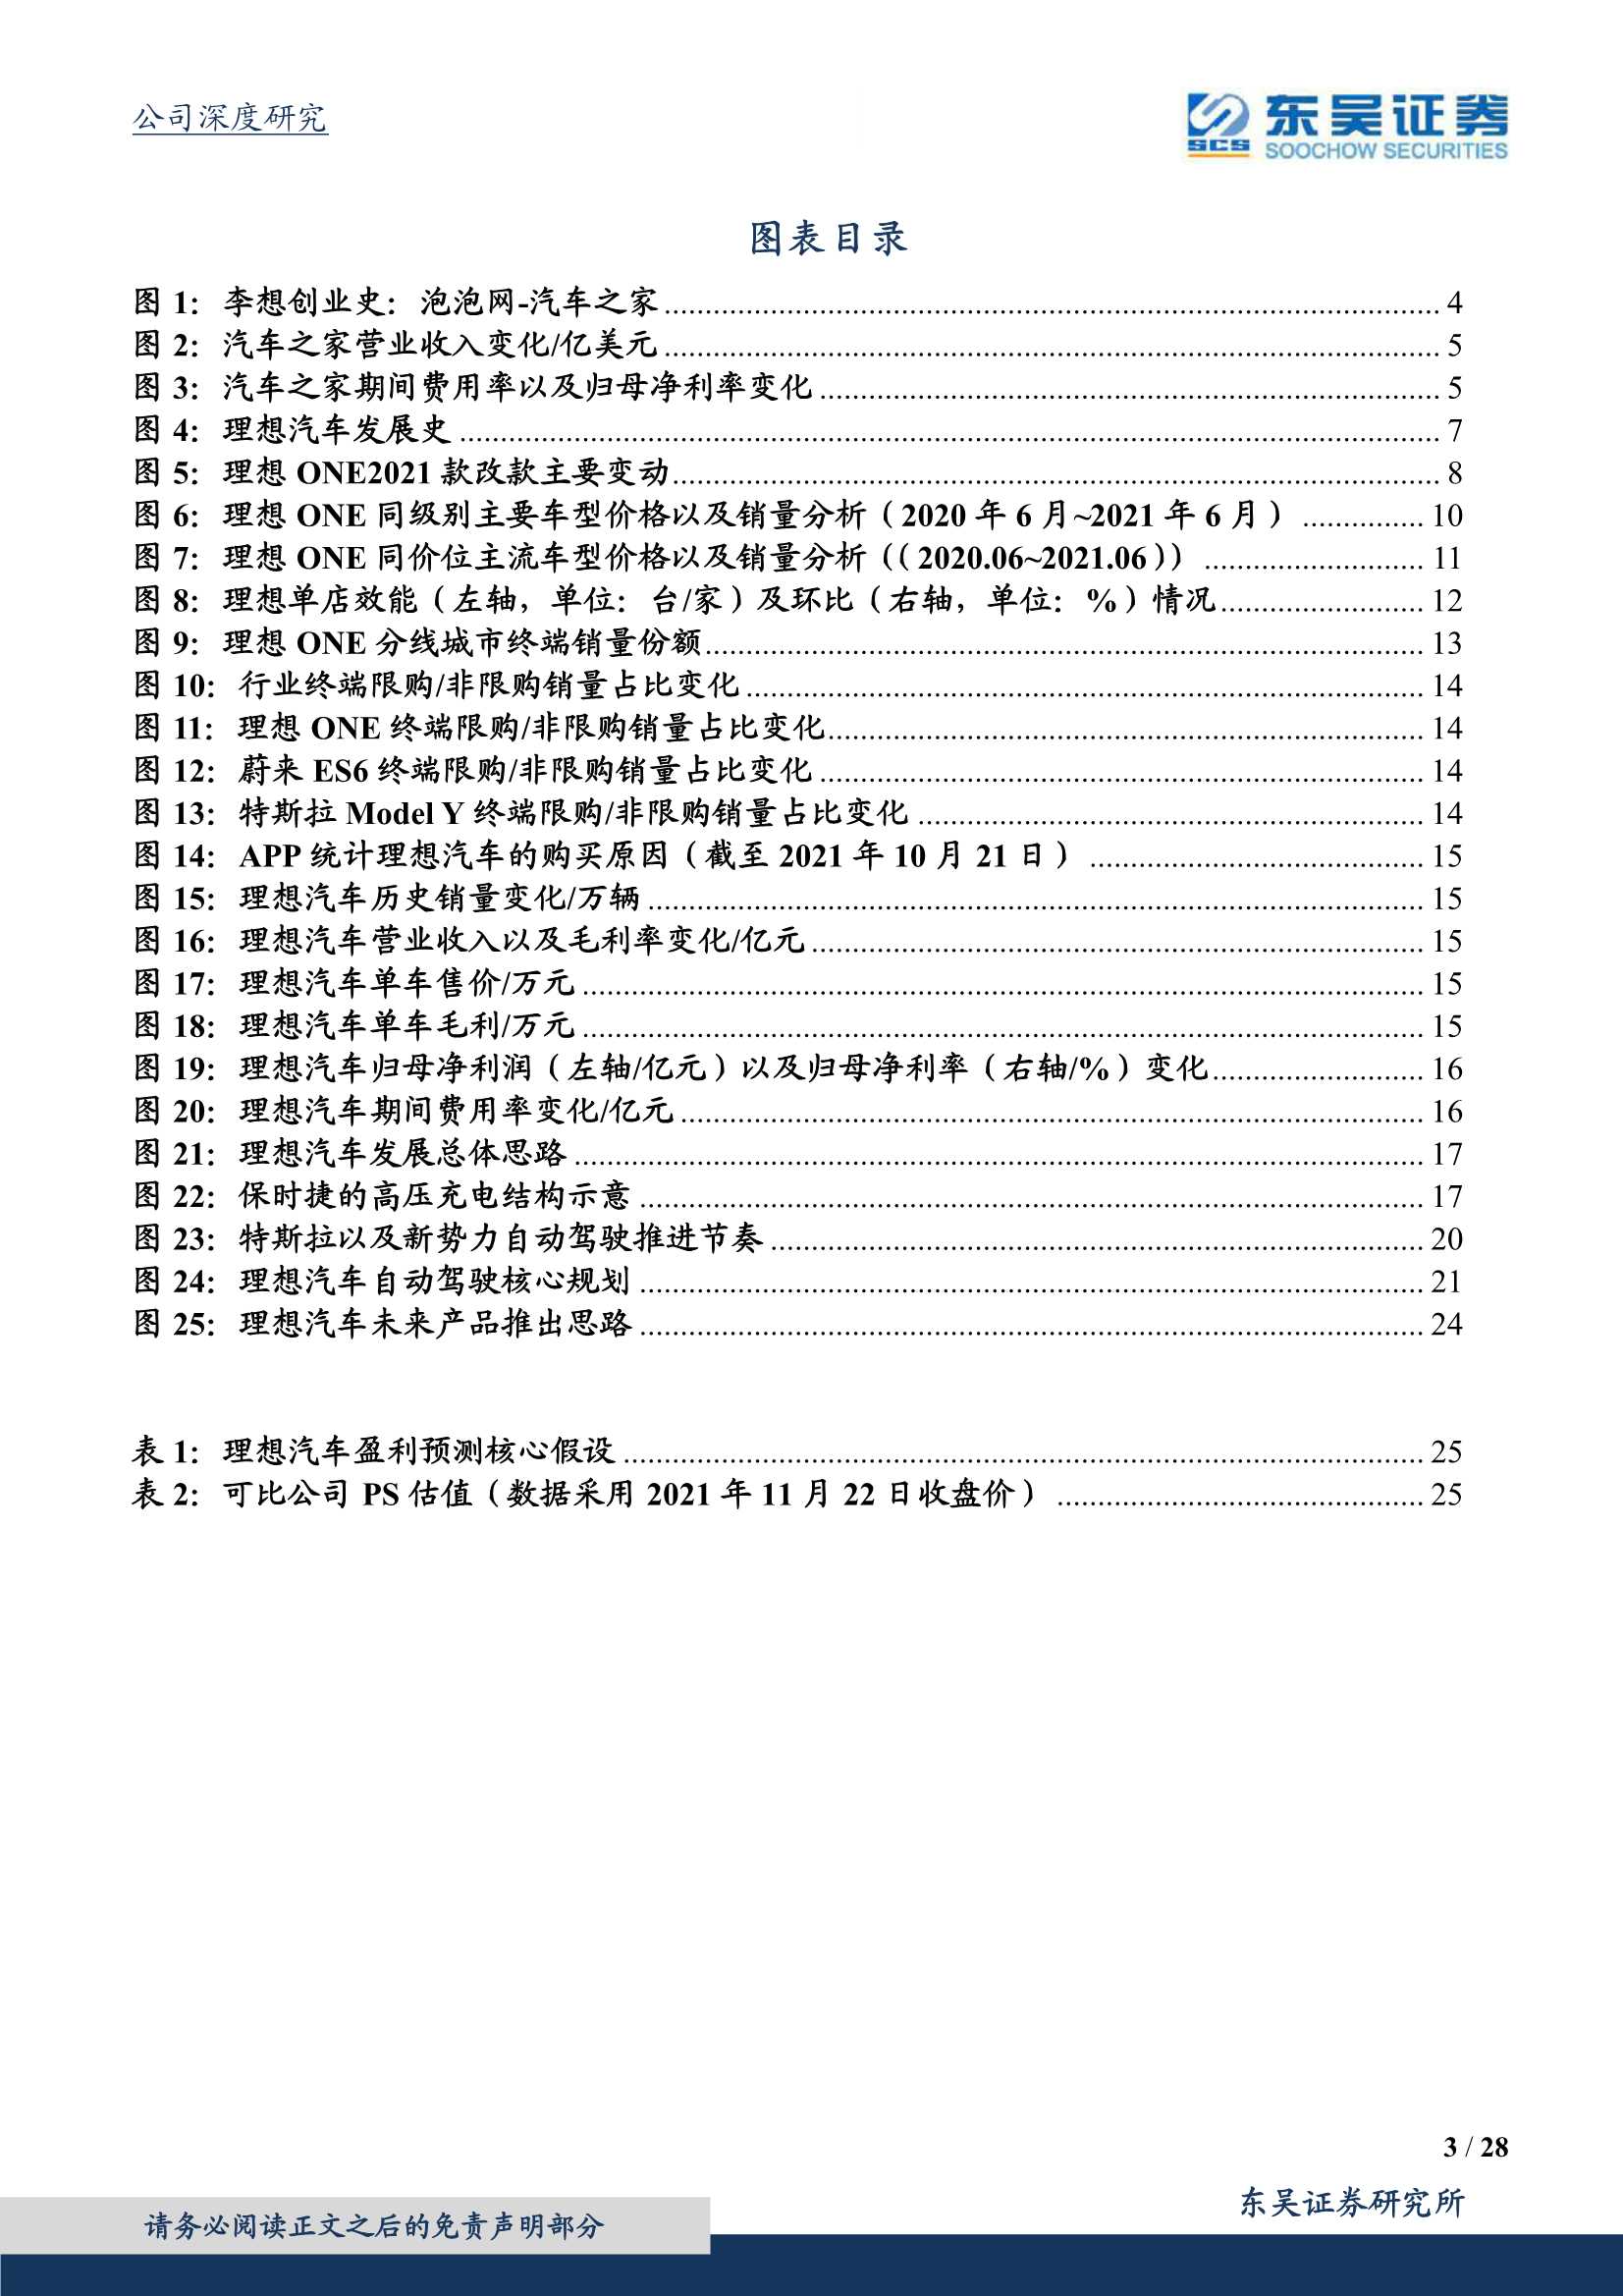 东吴证券-理想汽车~W-2015.HK-家庭用户的自主豪华品牌-20211122-28页